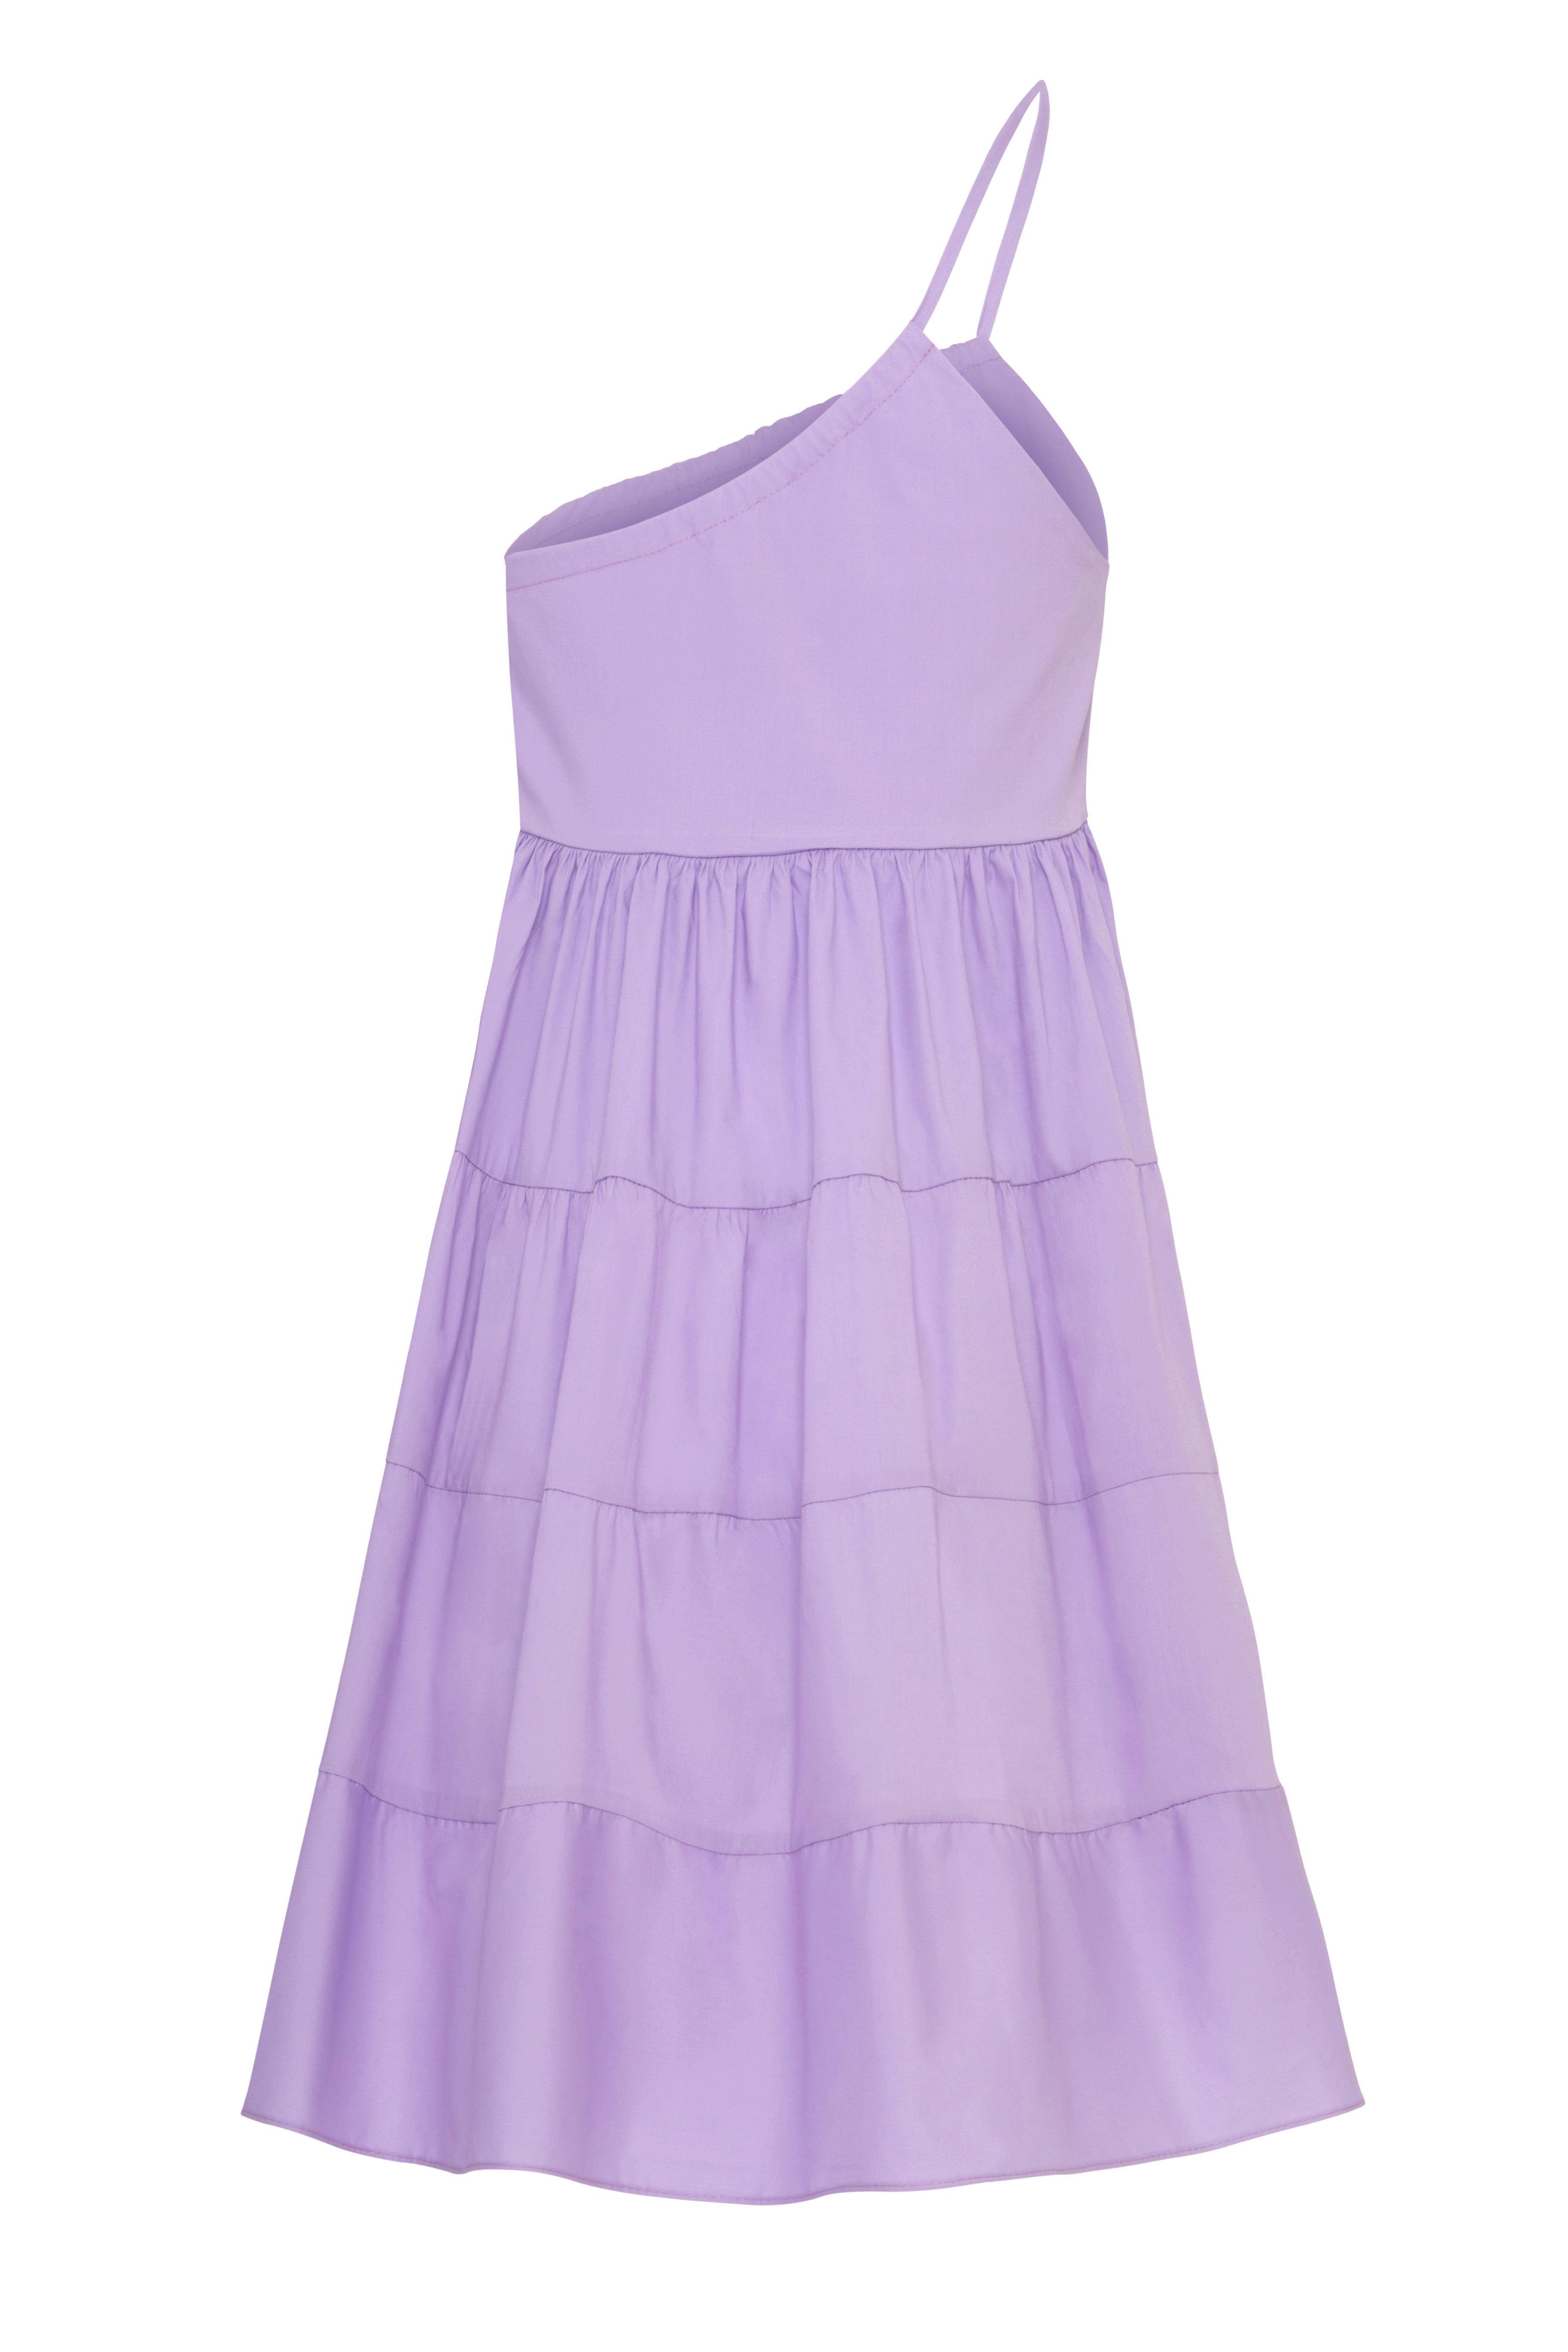 Amelie dress in lavender